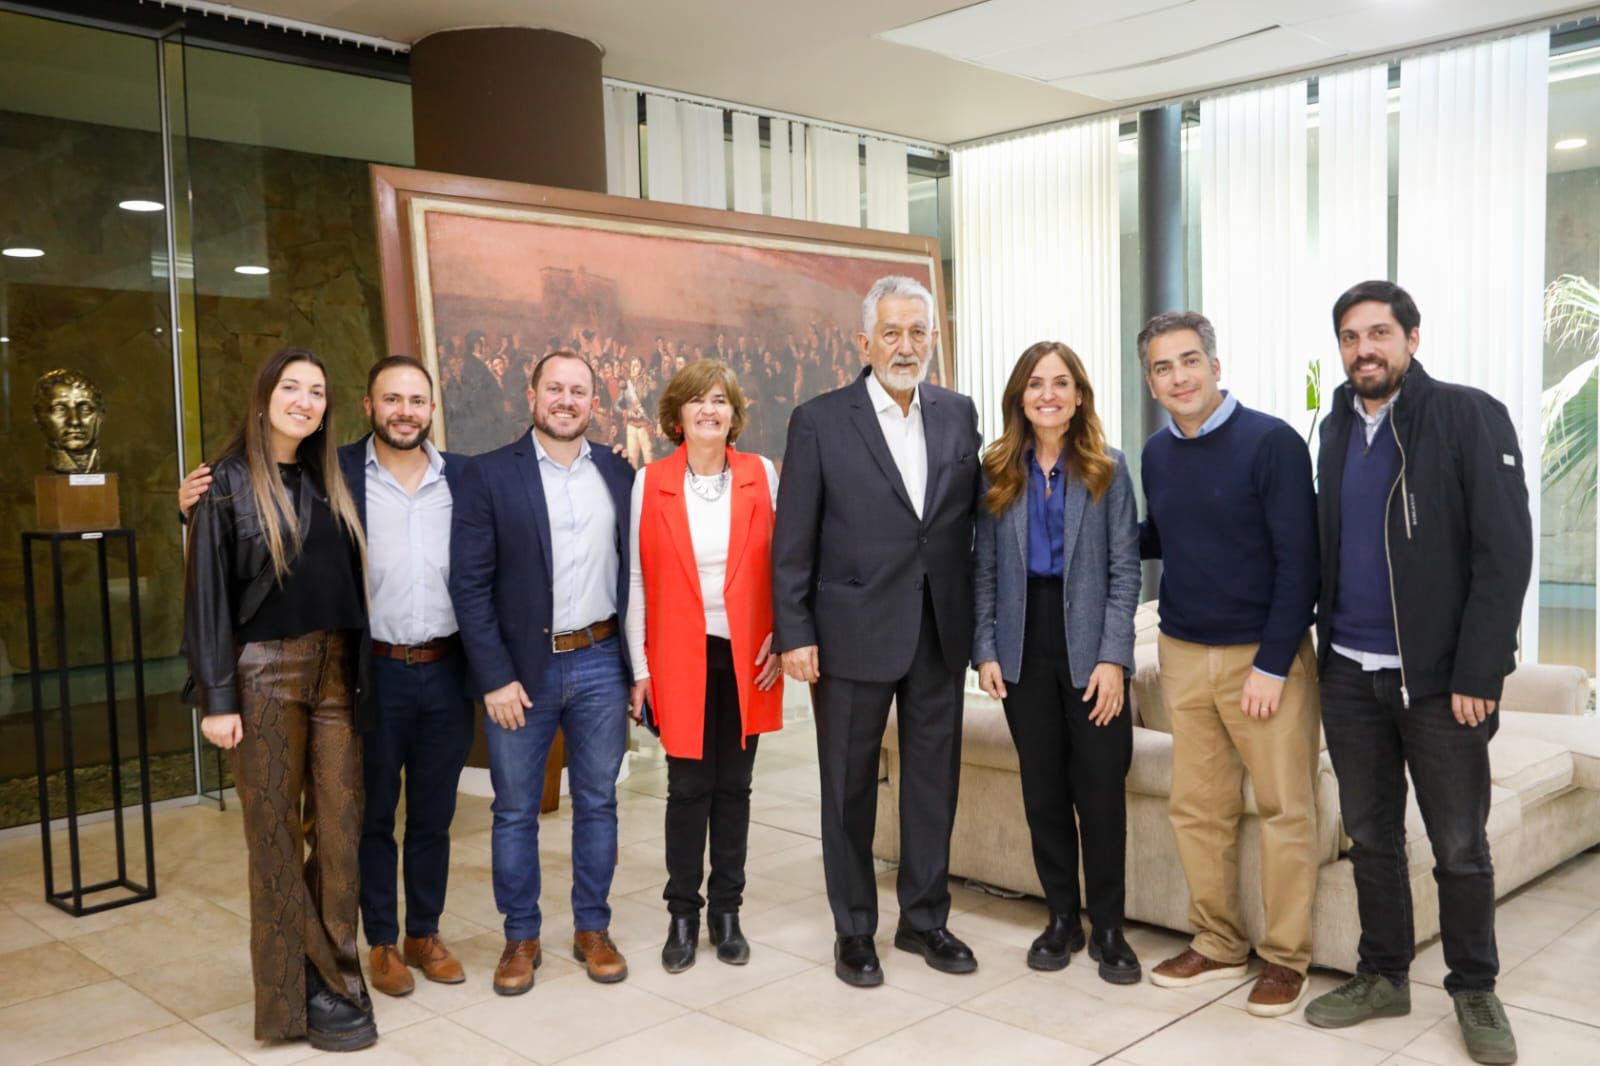 La ministra Tolosa Paz se encuentra junto al gobernador provincial, Alberto Rodríguez Saa, y otros funcionarios en su visita a la provincia de San Luis.